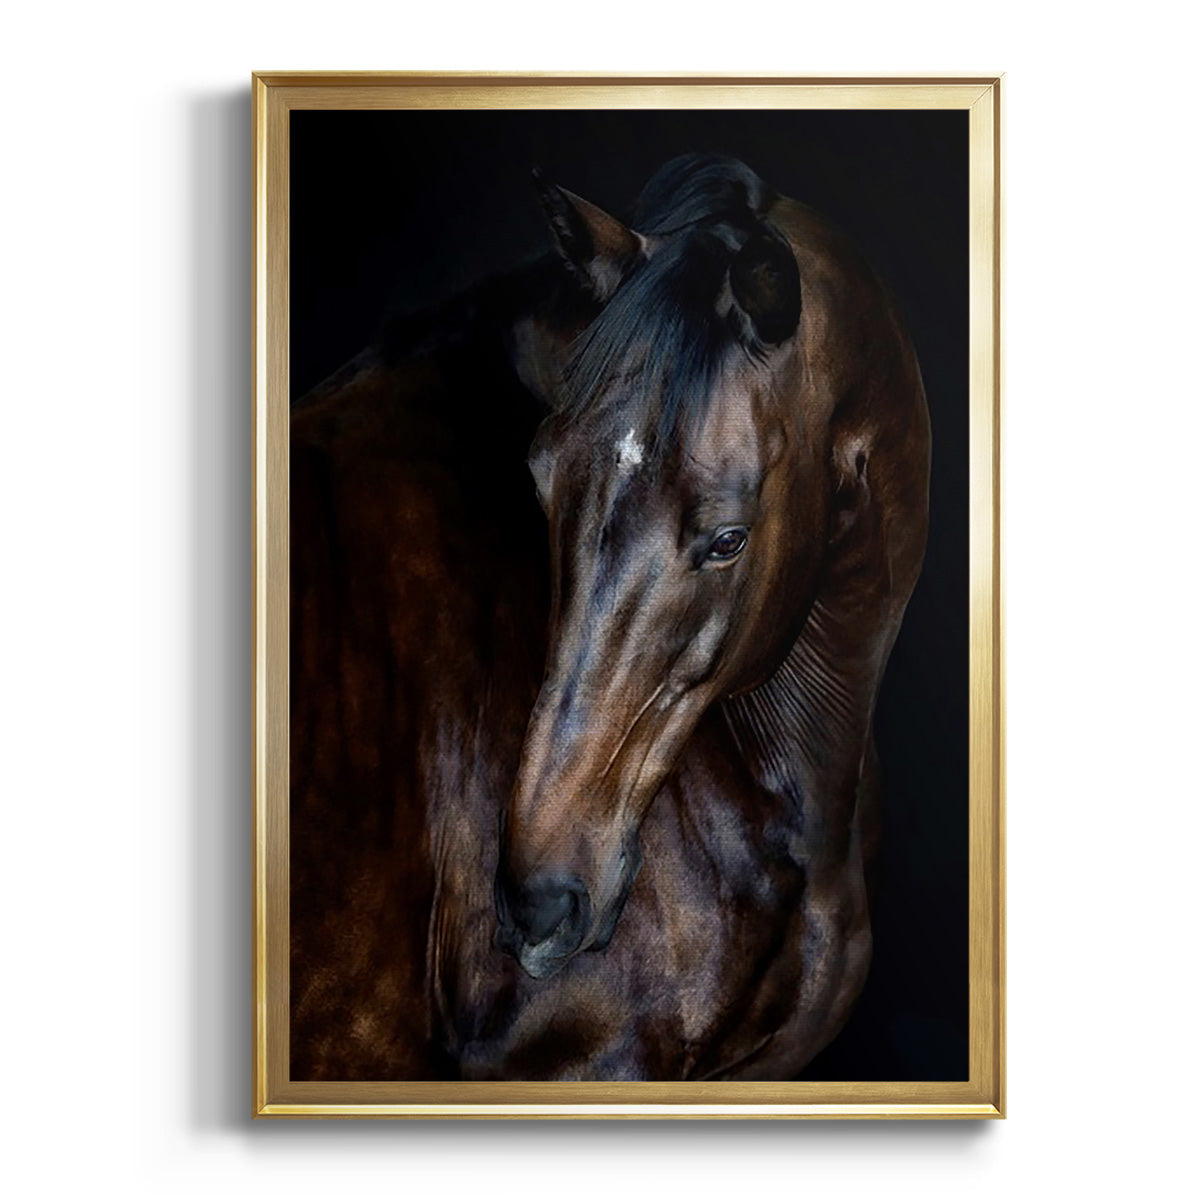 Sunlit Horses I Premium Framed Print - Ready to Hang